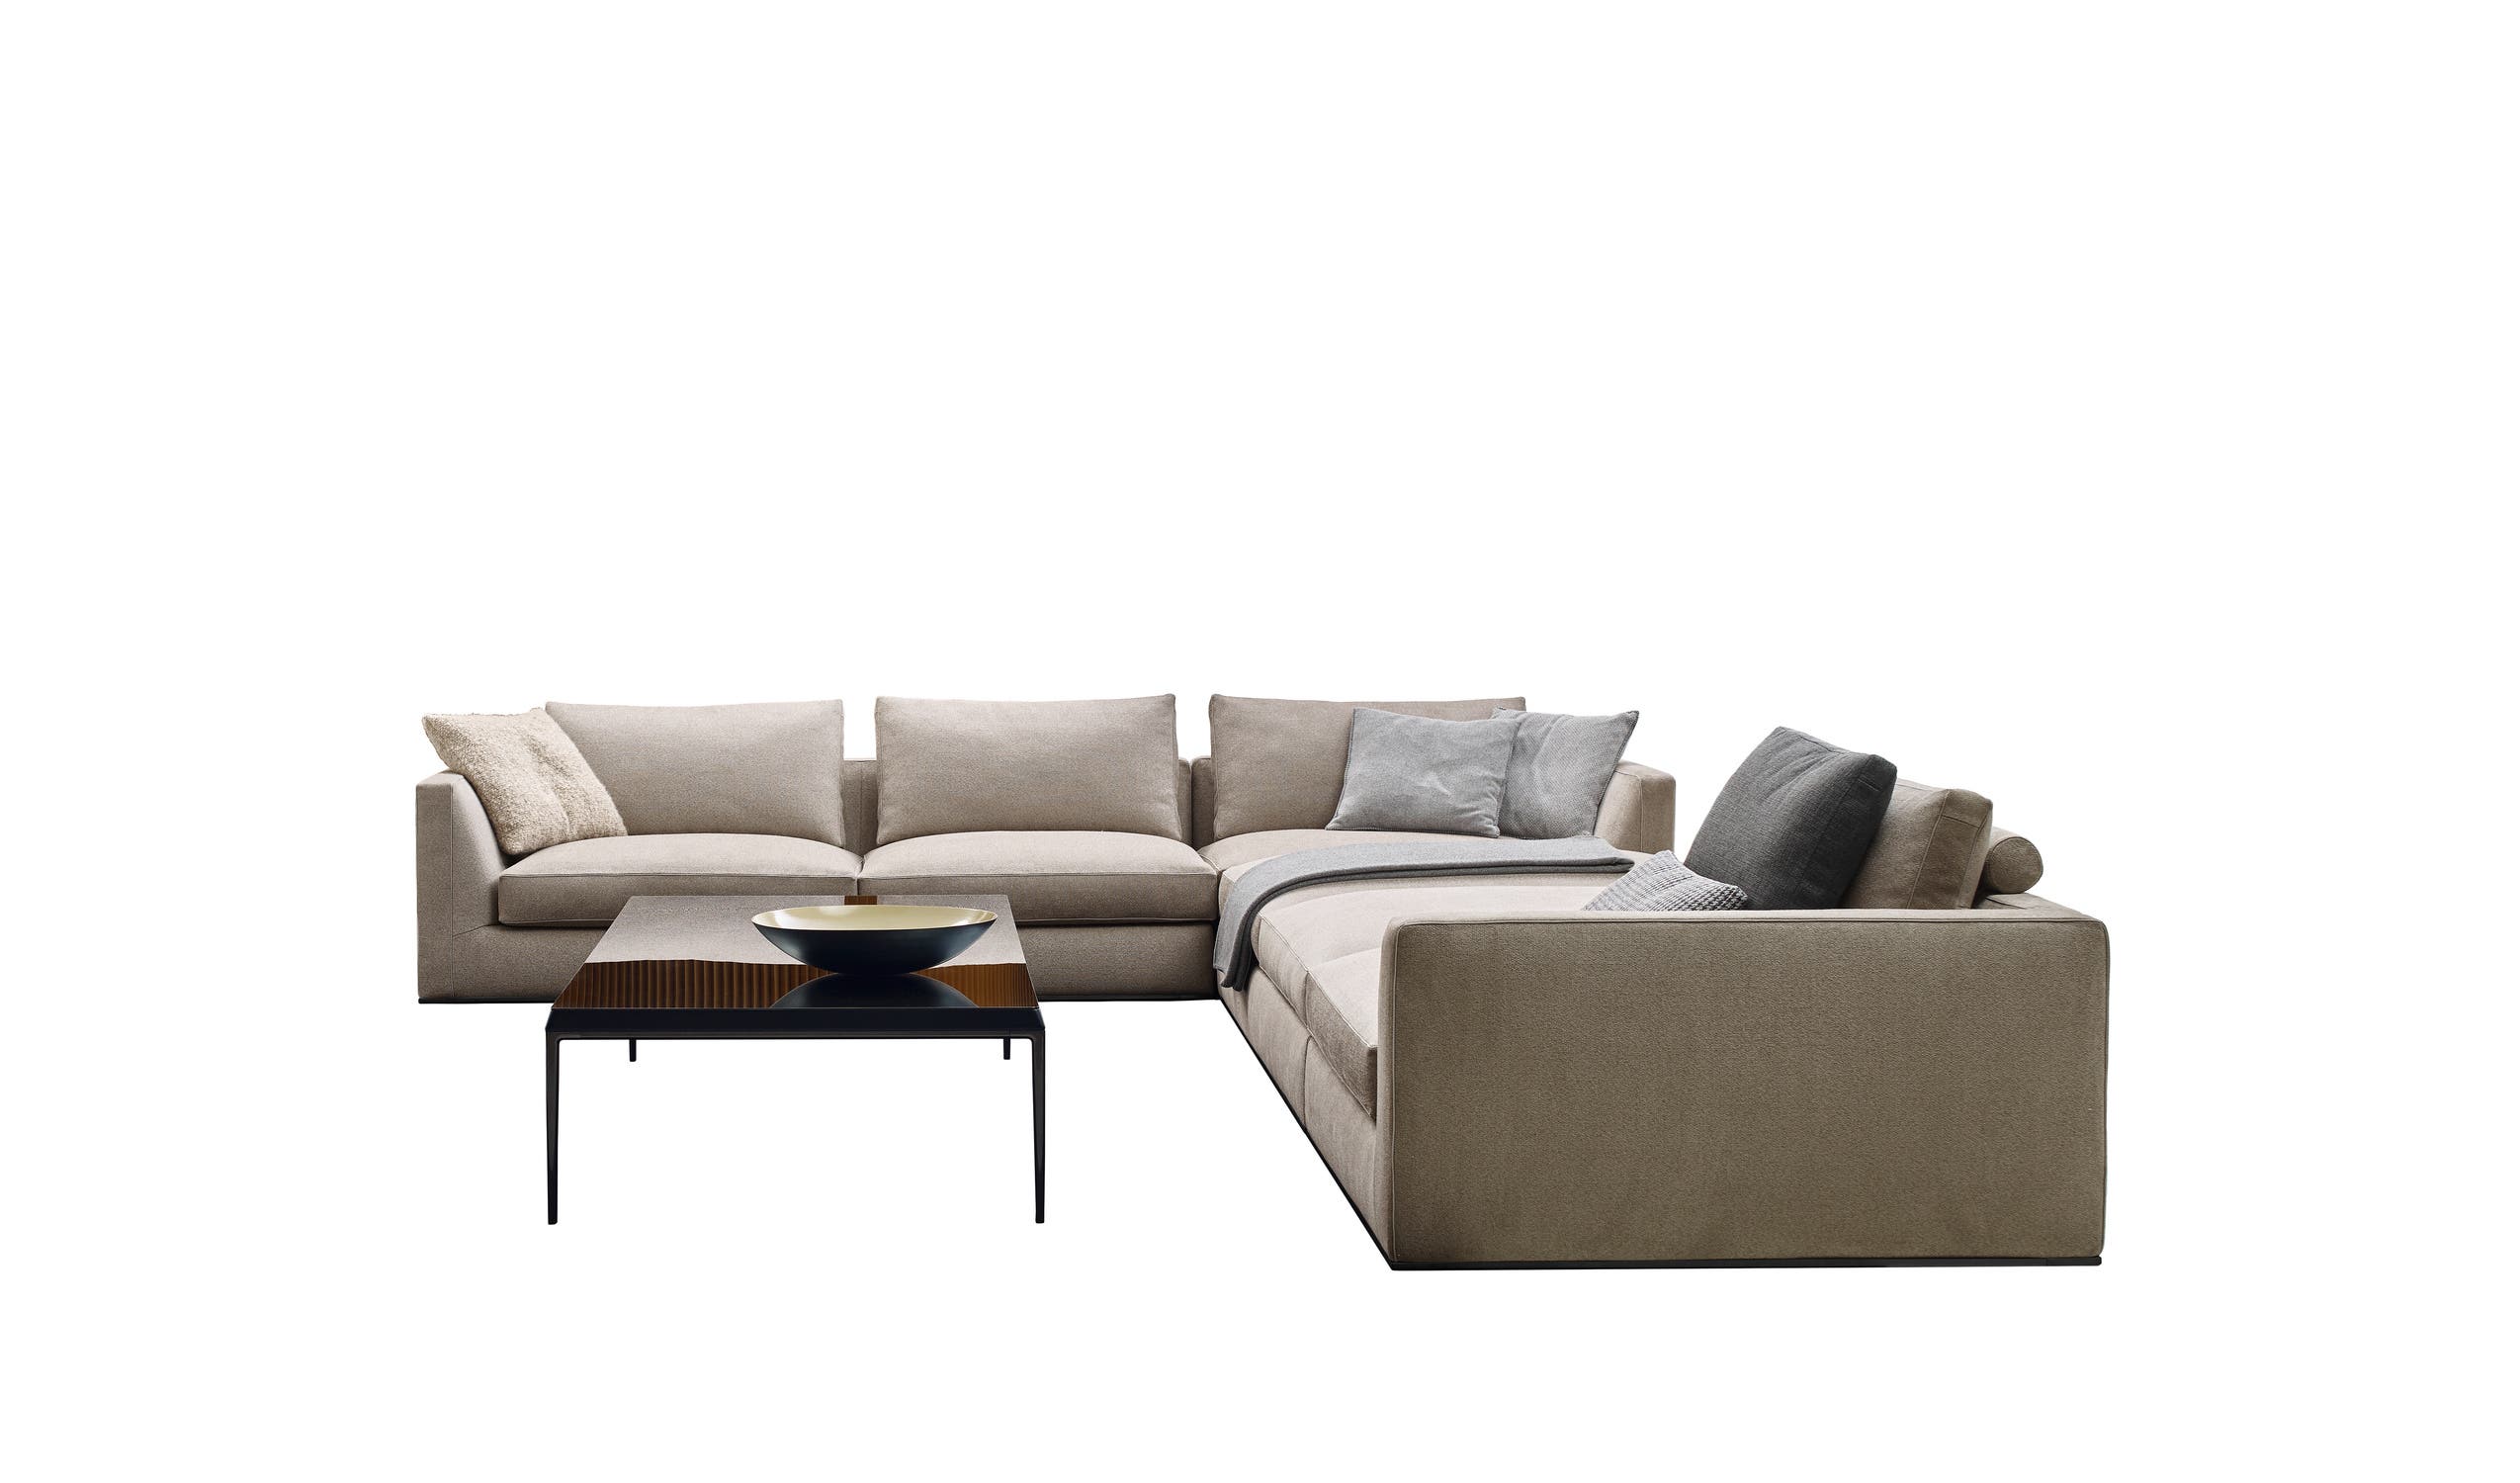 Modern designer italian sofas - Richard Sofas